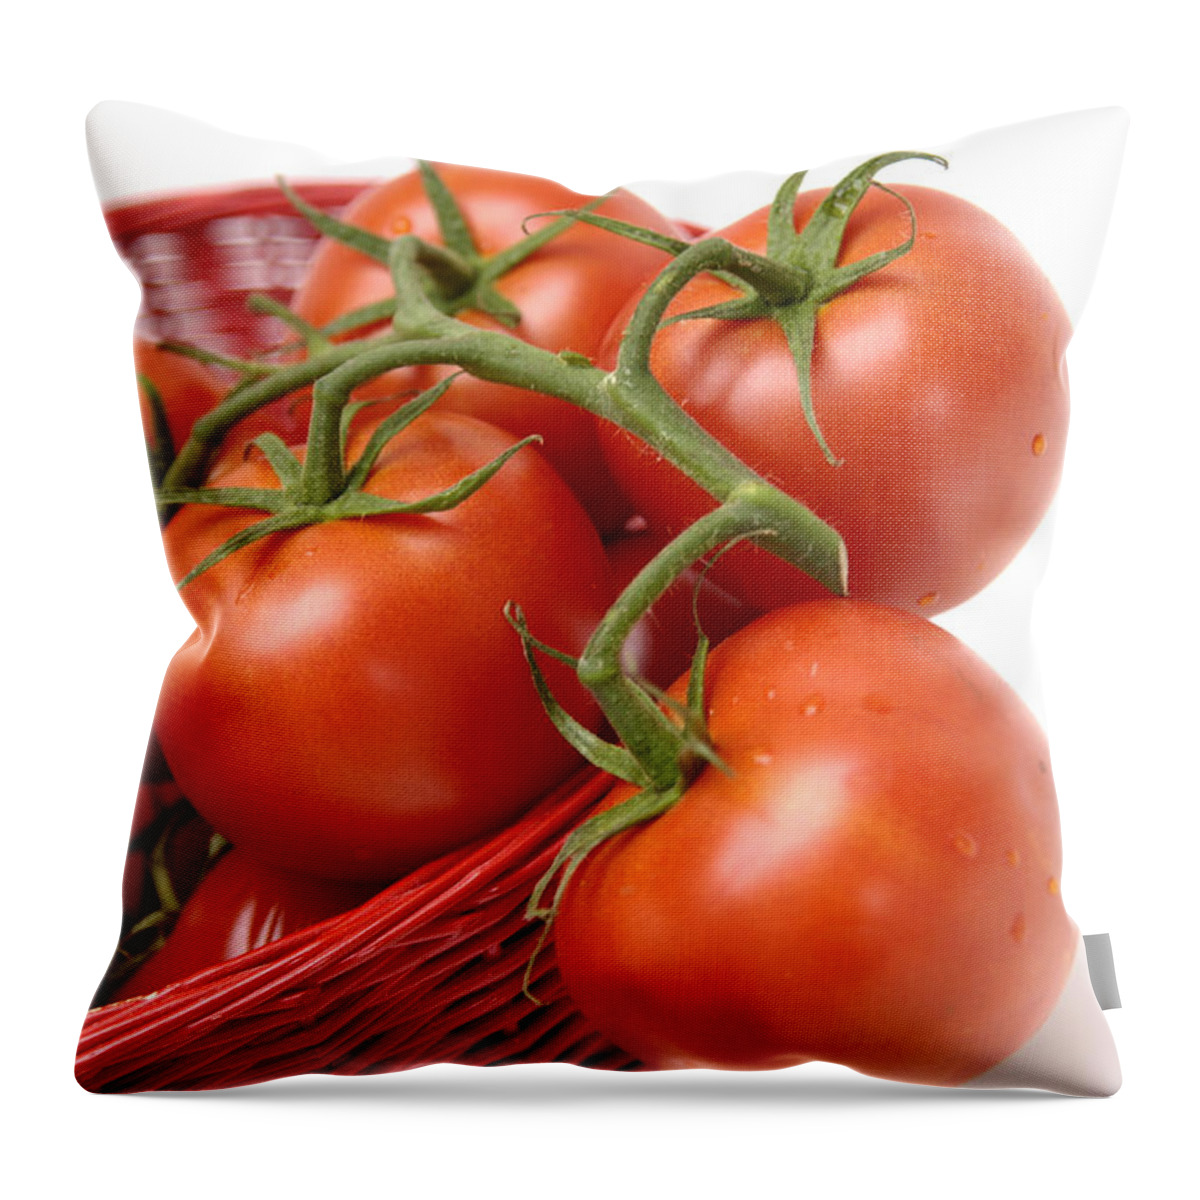   Vine  Throw Pillow featuring the photograph Tomatoes #1 by Bernard Jaubert